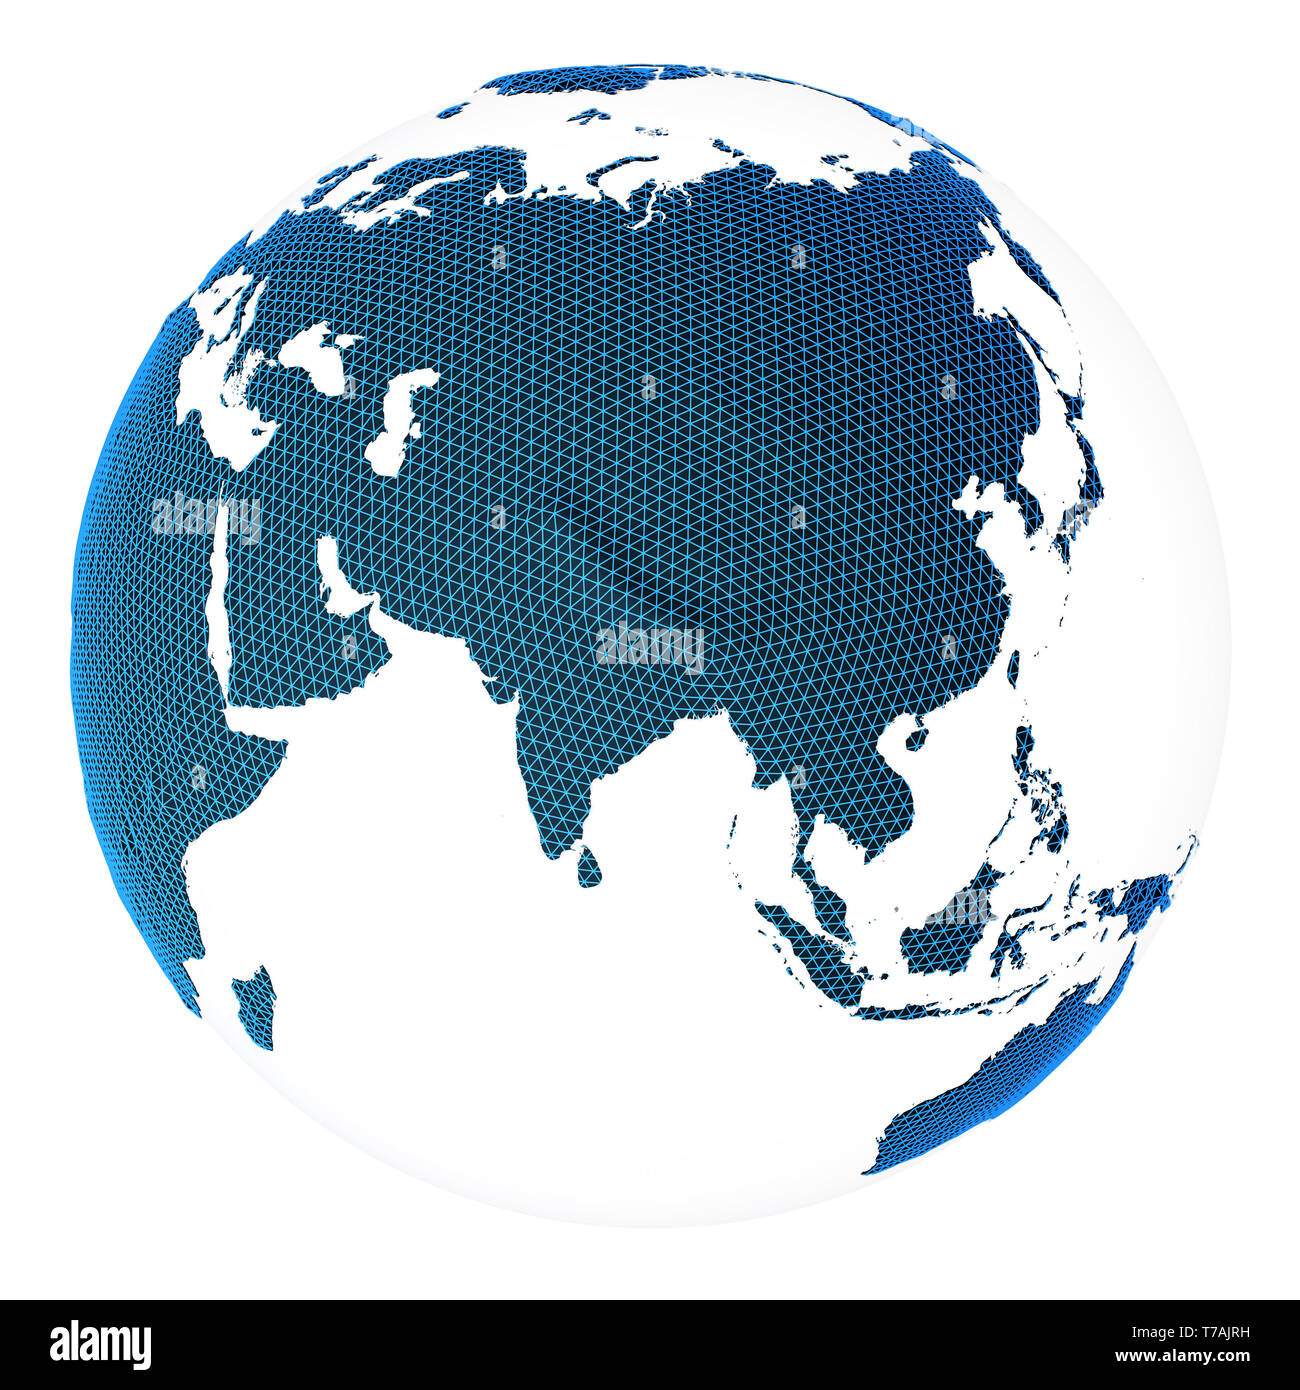 Welt Konzept Planet Erde 3D-Rendering Stockfoto